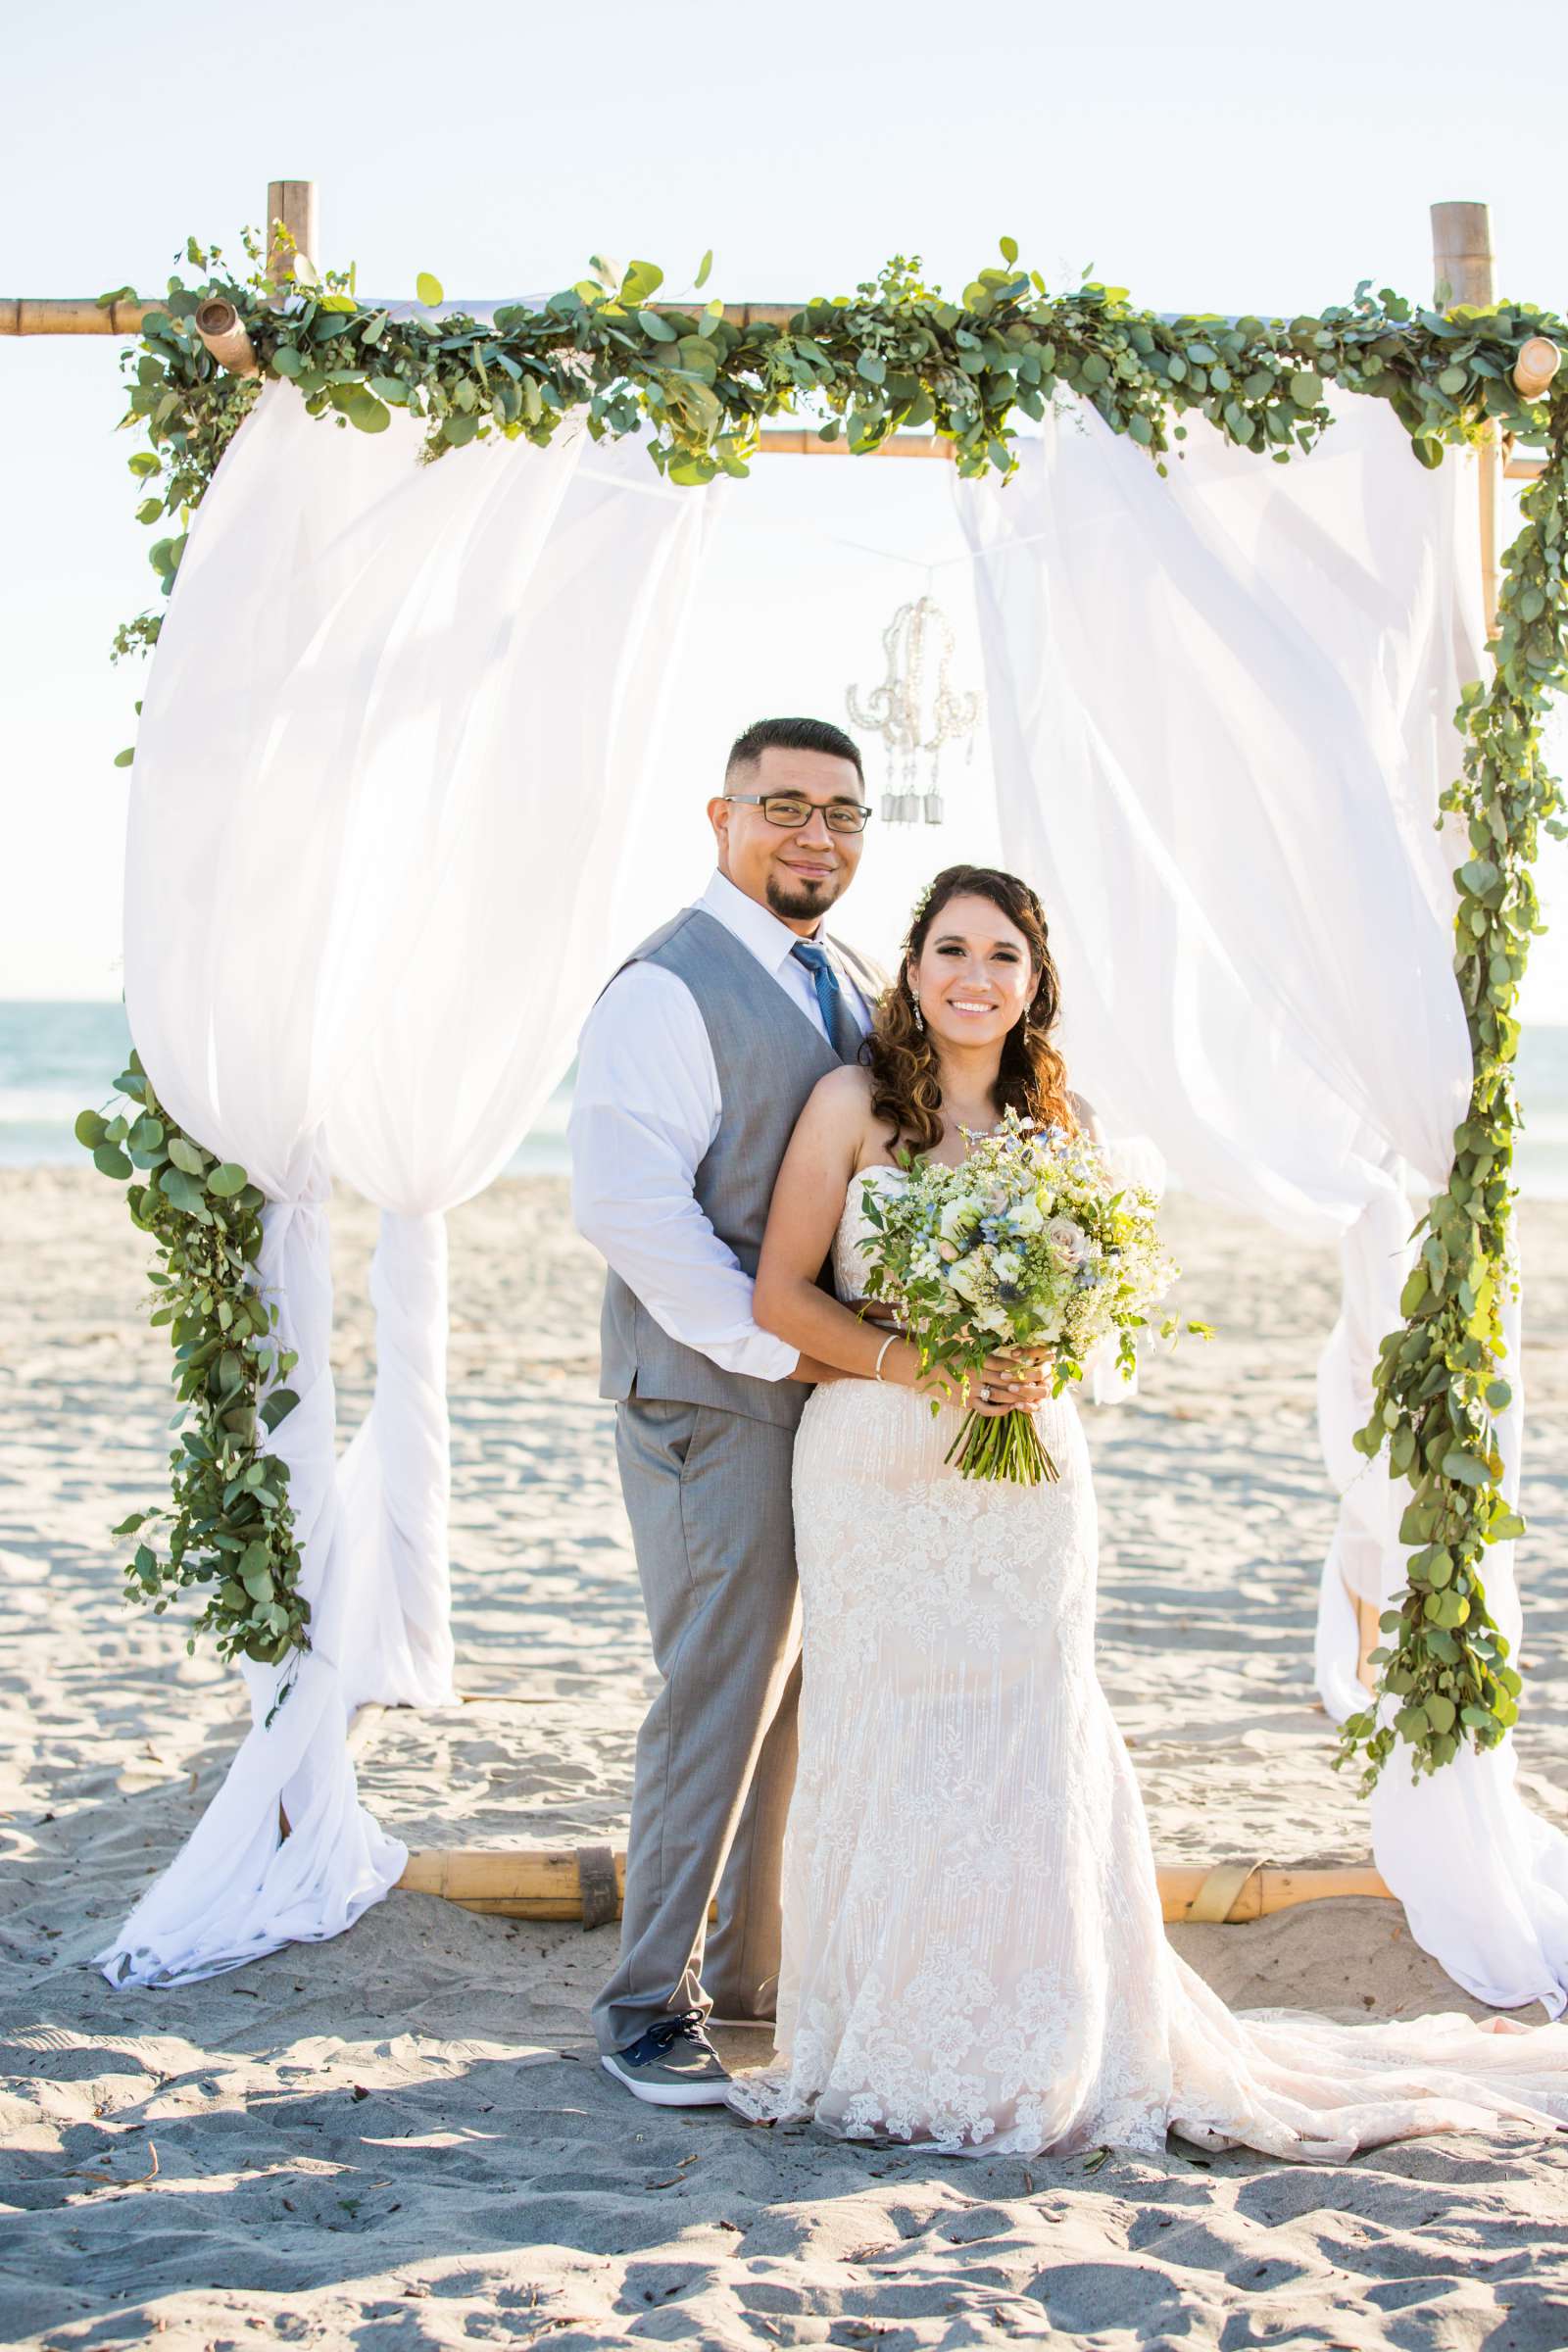 Del Mar Beach Resort Wedding coordinated by La Casa Del Mar, Alisa and Carlos Wedding Photo #380844 by True Photography